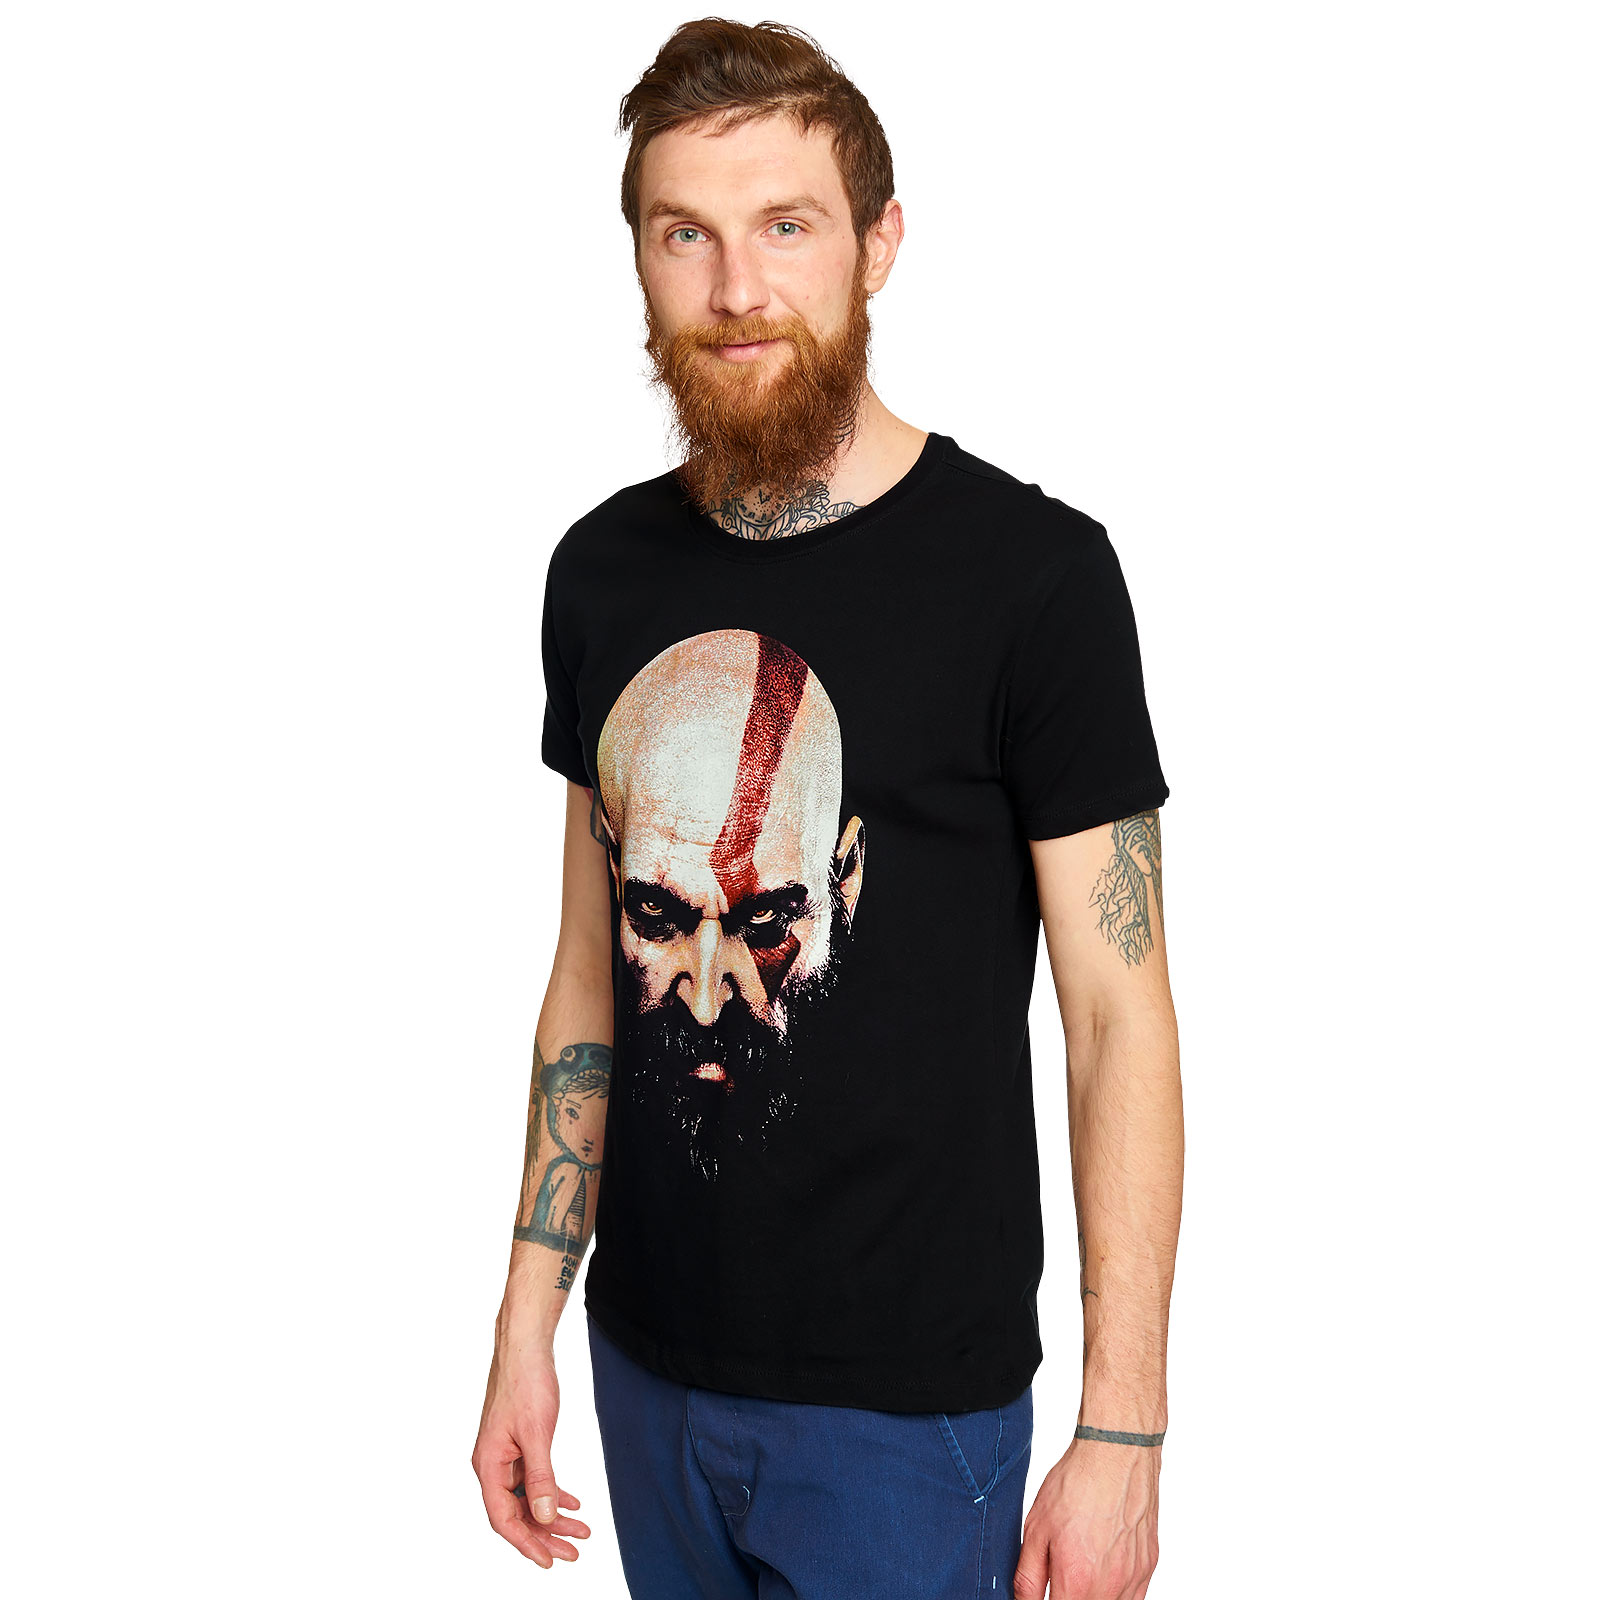 God of War - Kratos Face T-Shirt Black